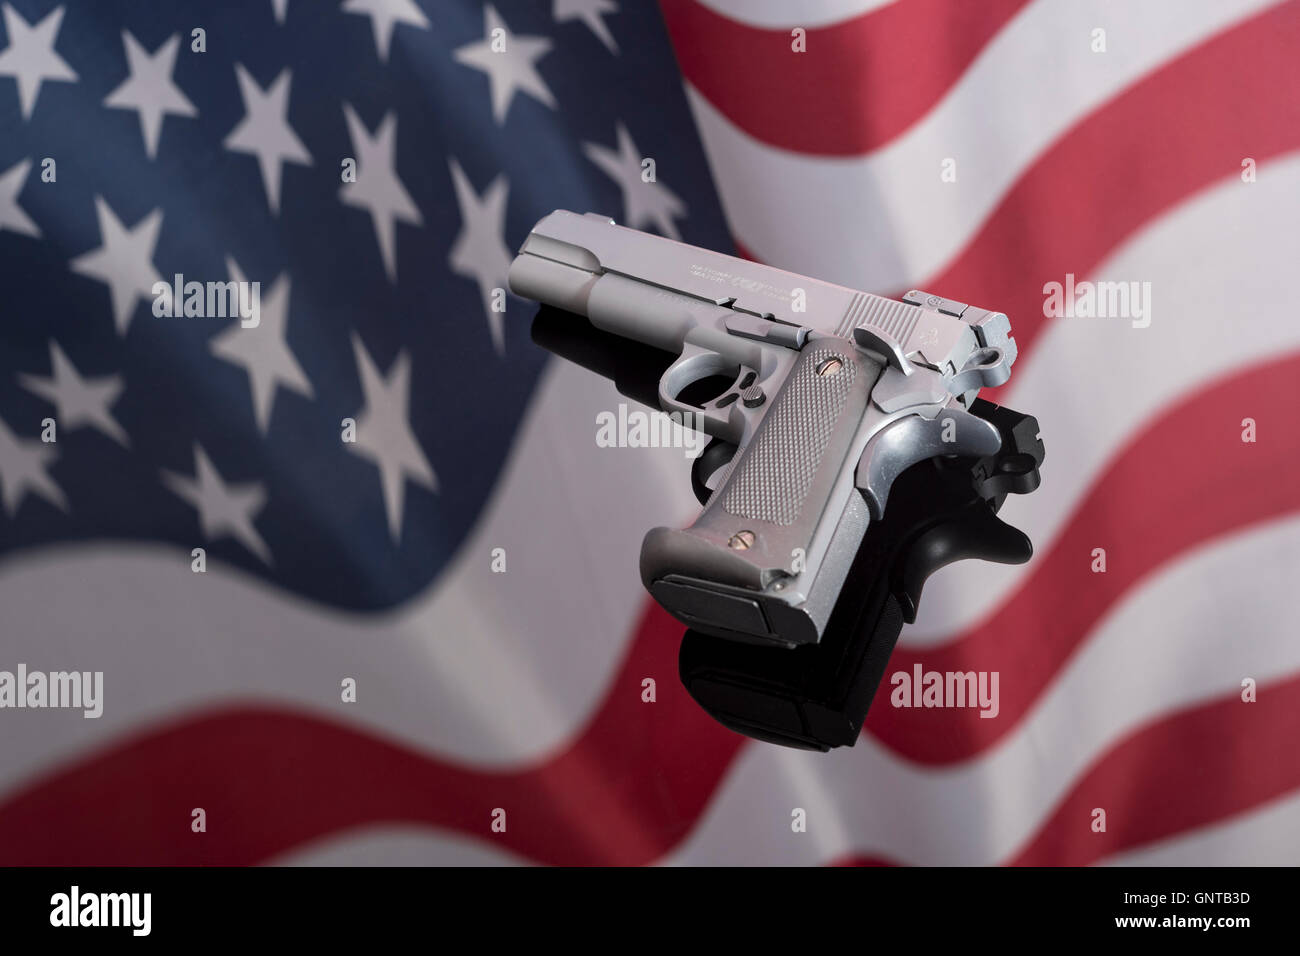 Replica Colt 1911A gegen Spiegelung der US-Flagge/Stars & Stripes - für Waffenkontrolle, US-Waffengesetze, Waffen, Verbrechenskonzept, Chicagoer Waffen, Gangs Waffen. Stockfoto